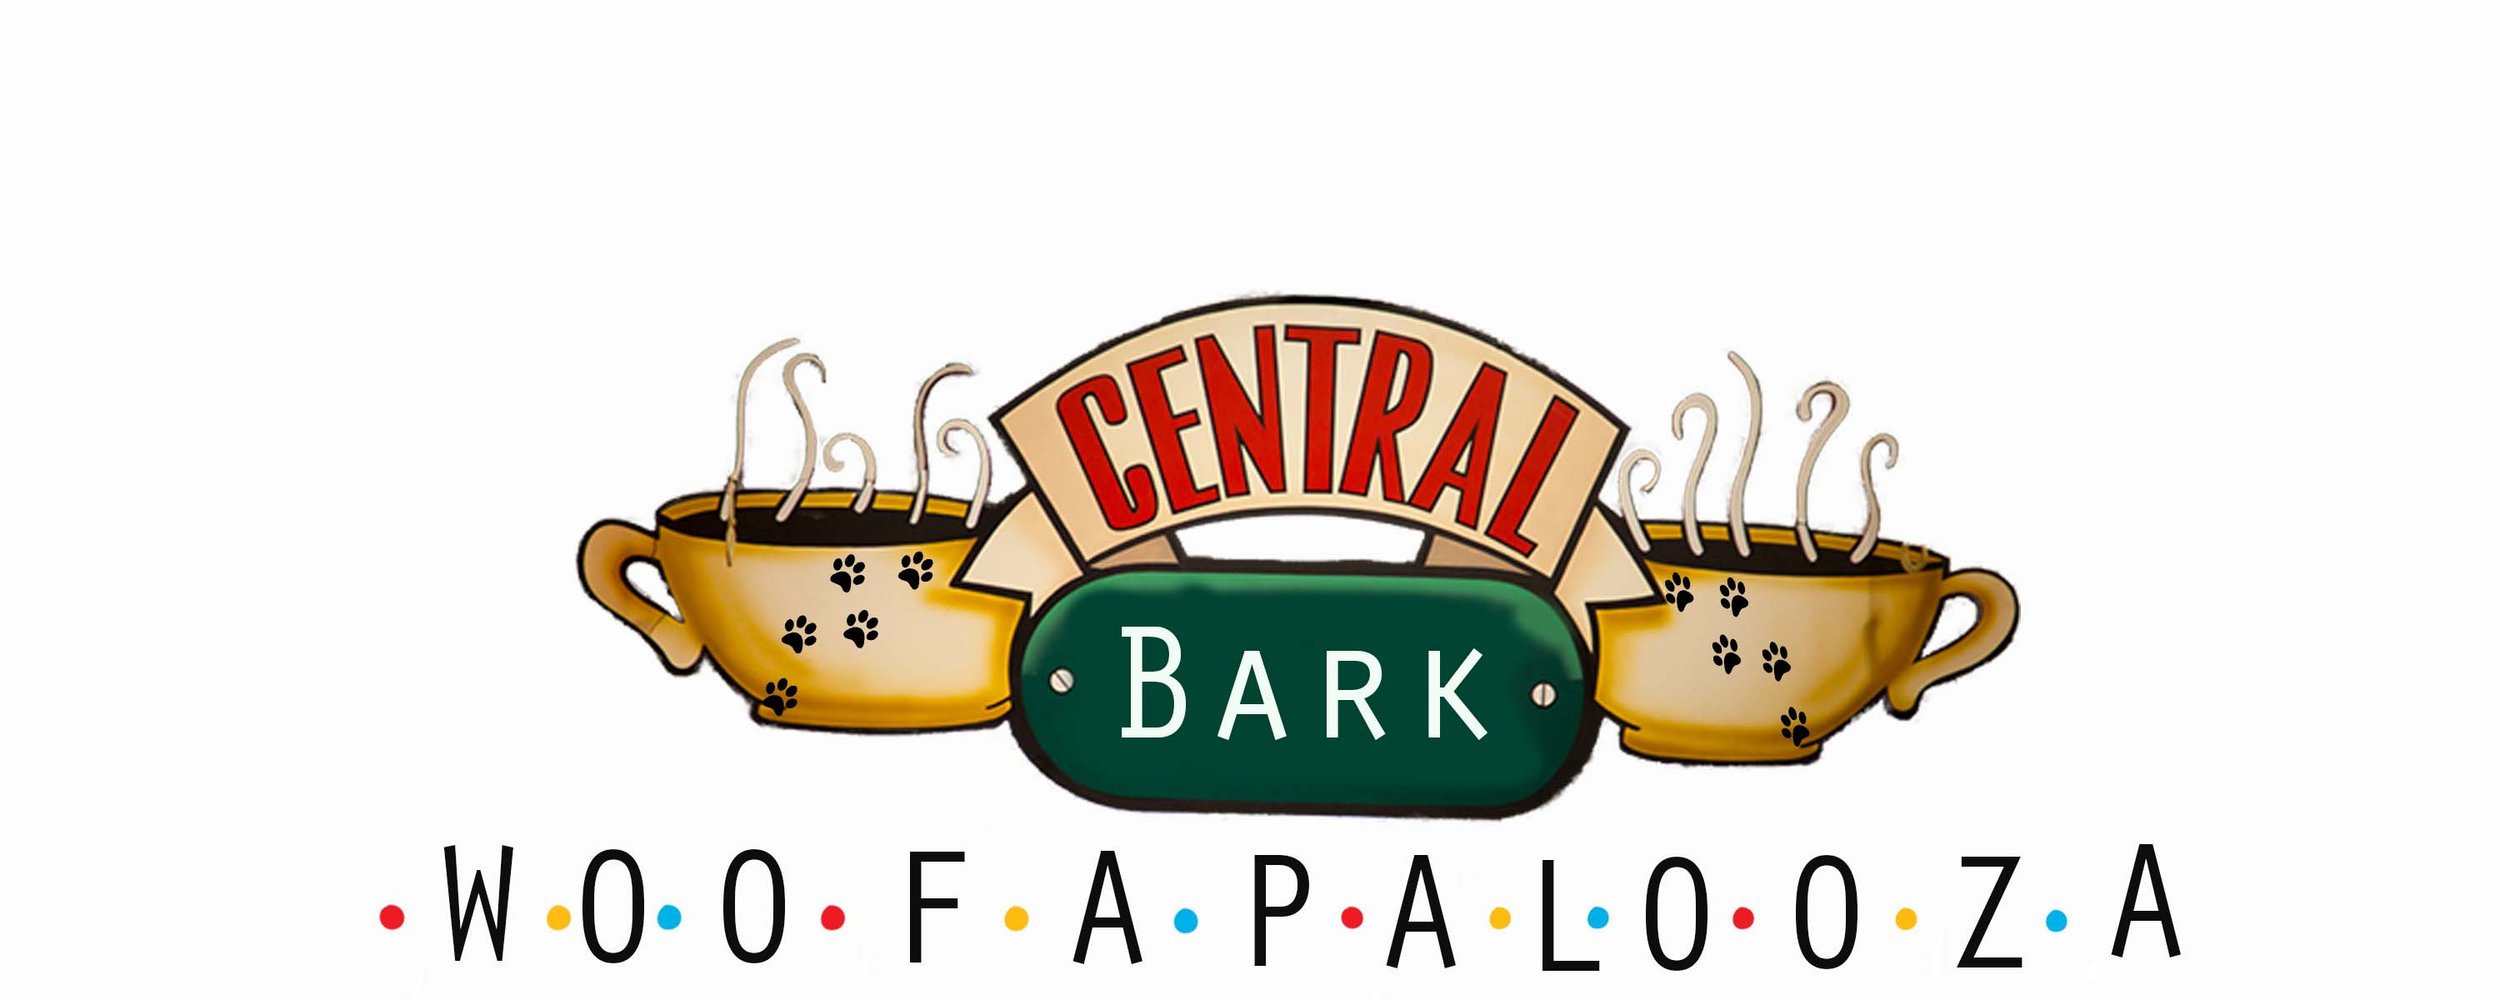 Central Bark Logo.jpg